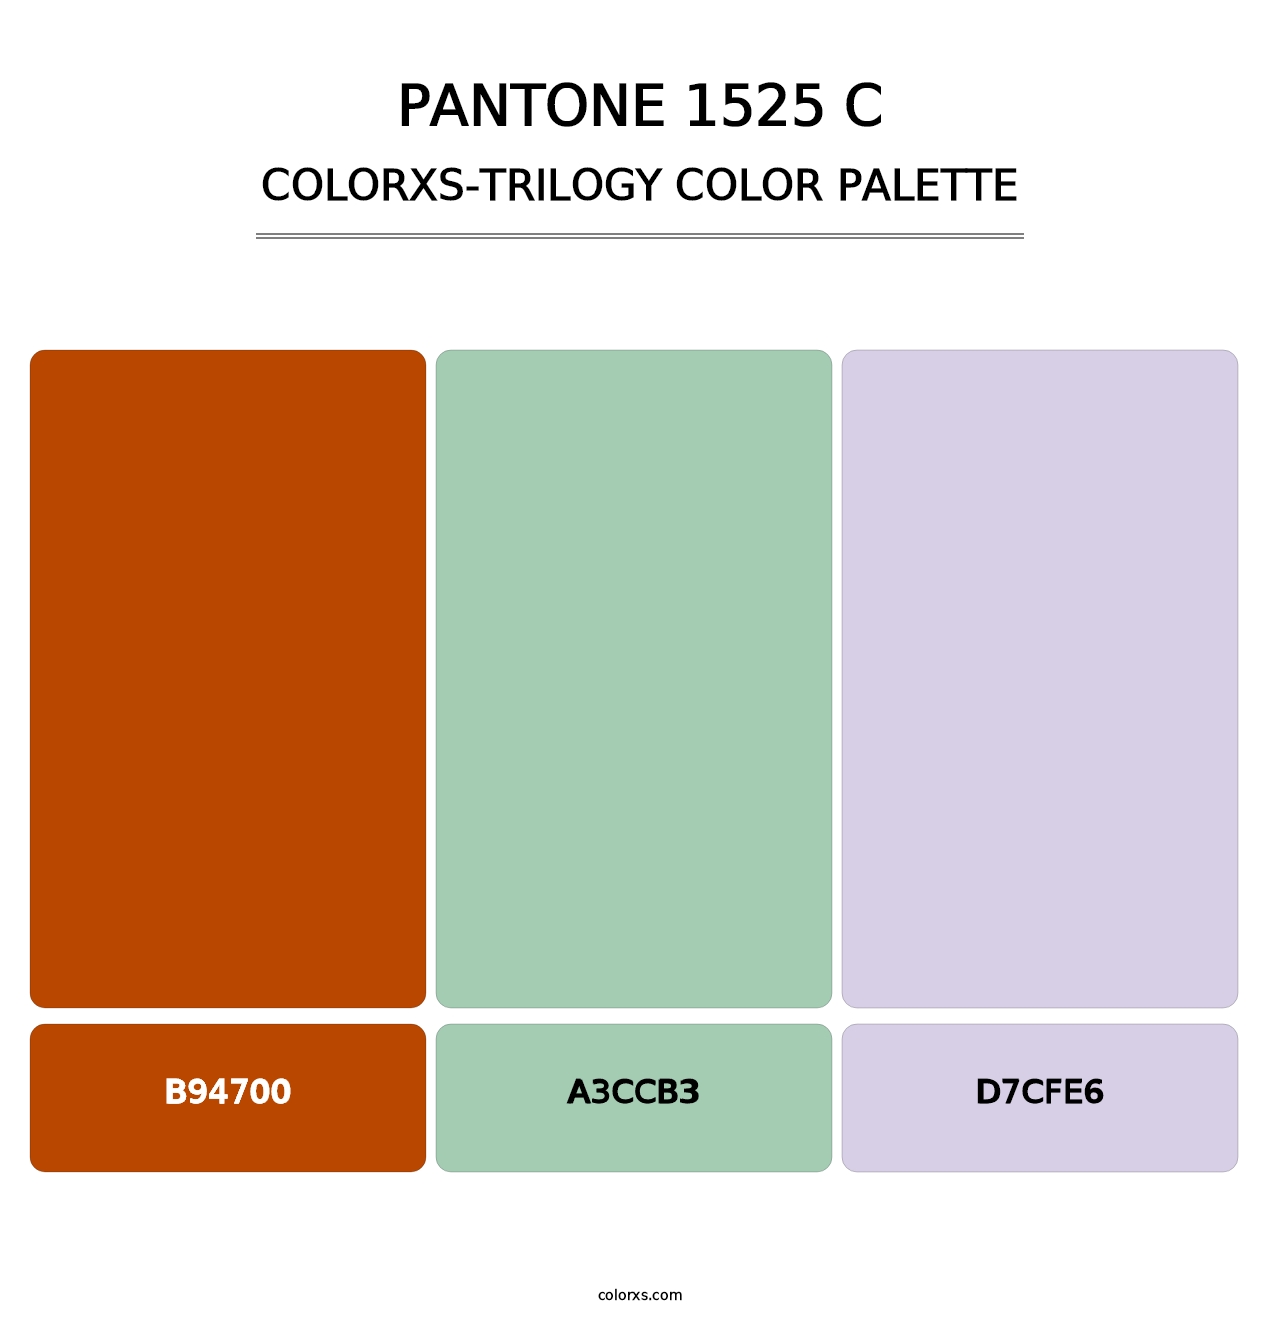 PANTONE 1525 C - Colorxs Trilogy Palette